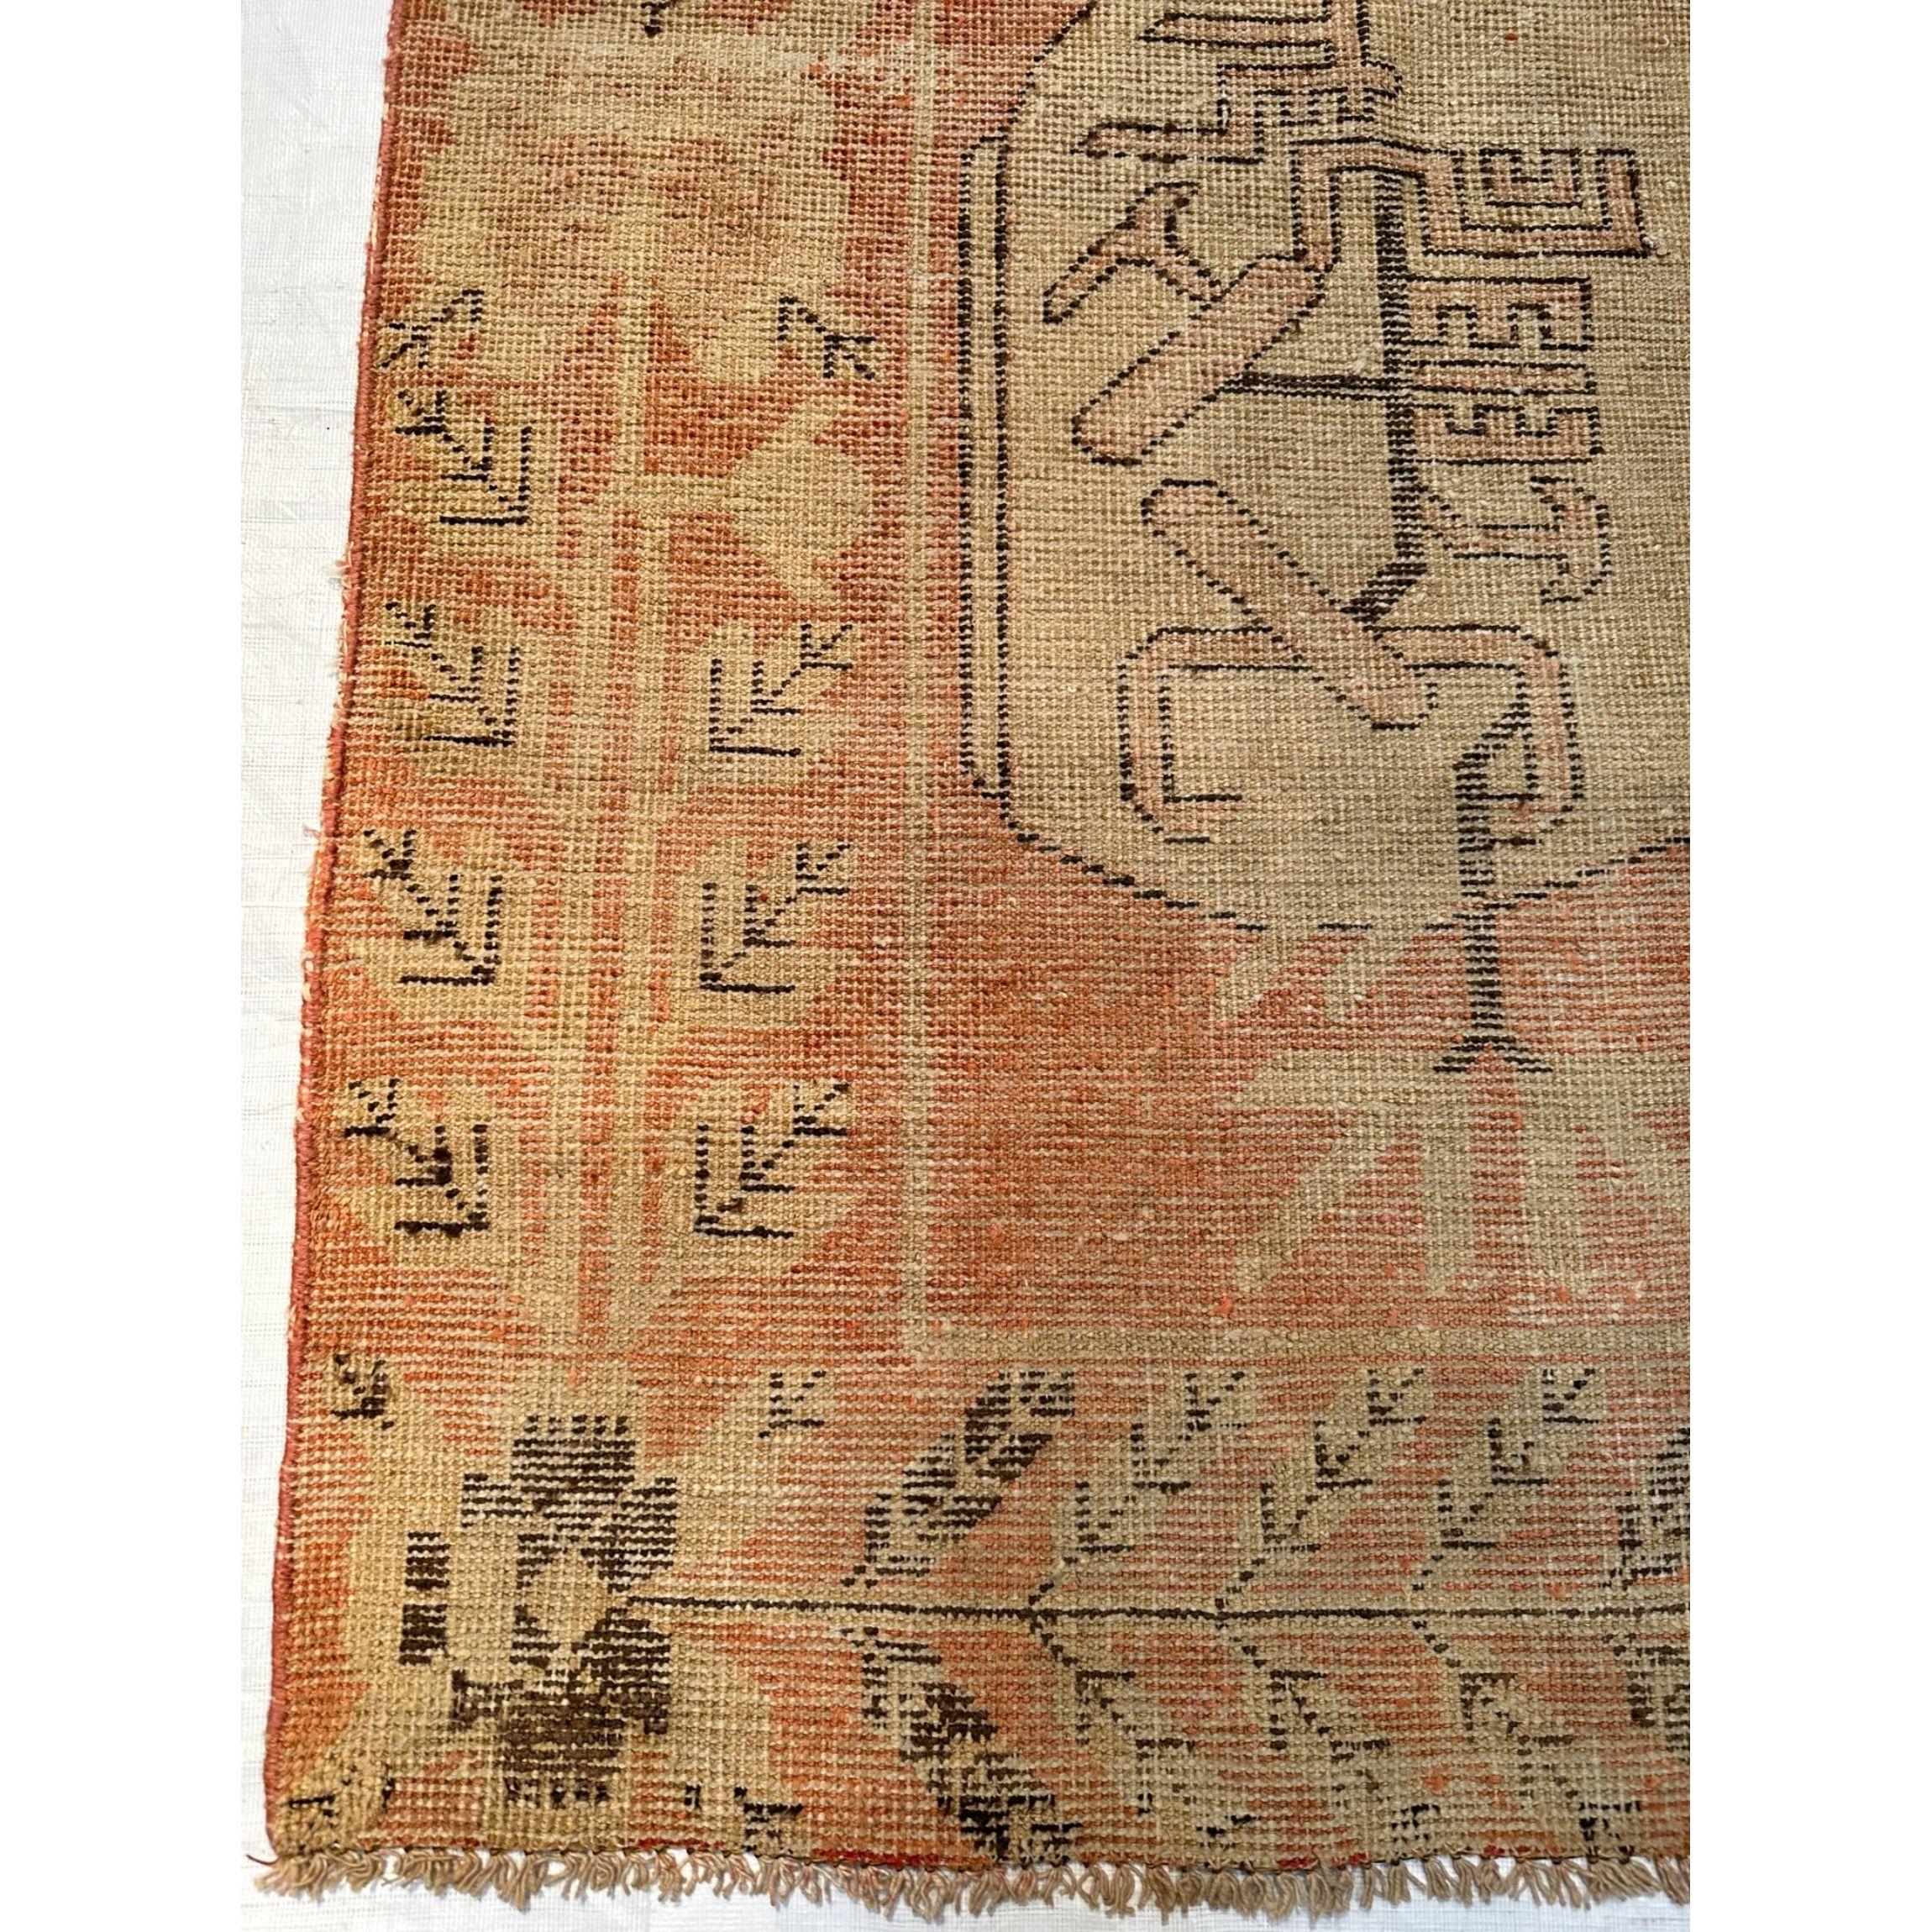 L'oasis désertique de Khotan était une étape importante sur la route de la soie. Les habitants de Khotan étaient des noueurs de tapis experts qui produisaient des tapis anciens de grande qualité pour le commerce intérieur et extérieur. Les tapis de